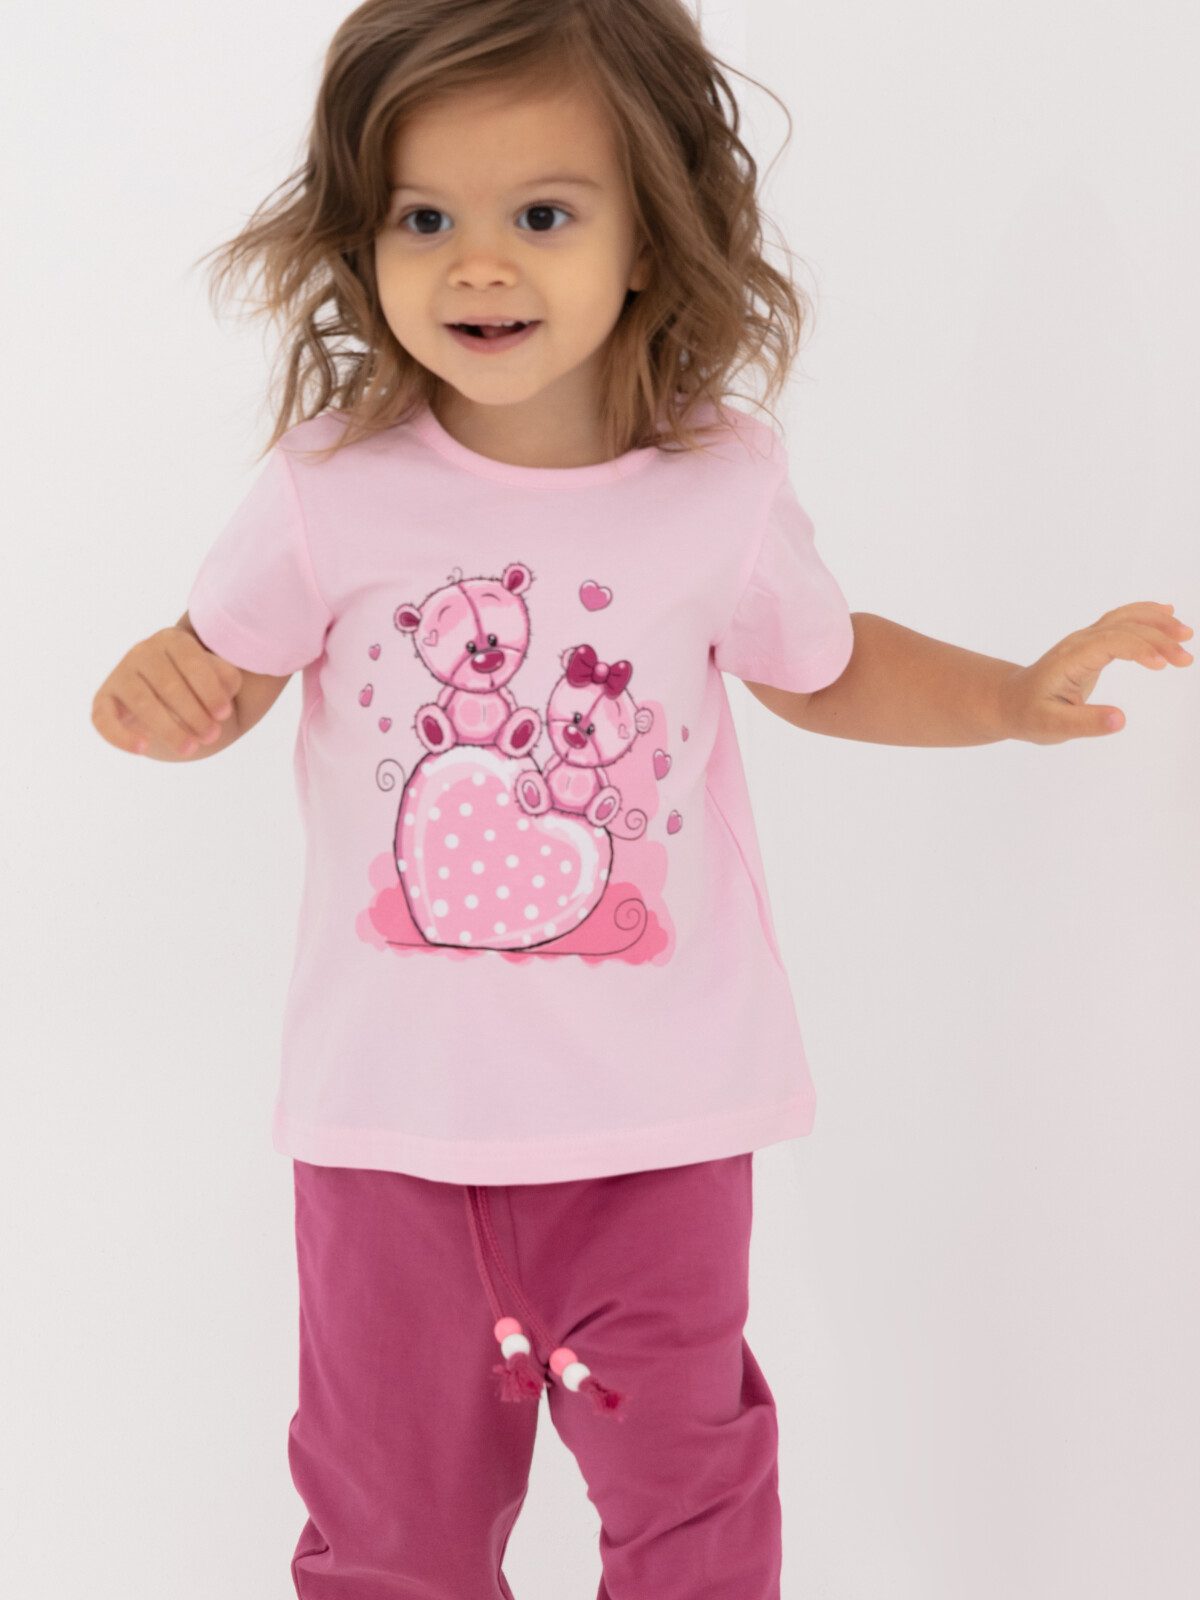 Комплект детский трикотажный для девочек: фуфайка (футболка), брюки